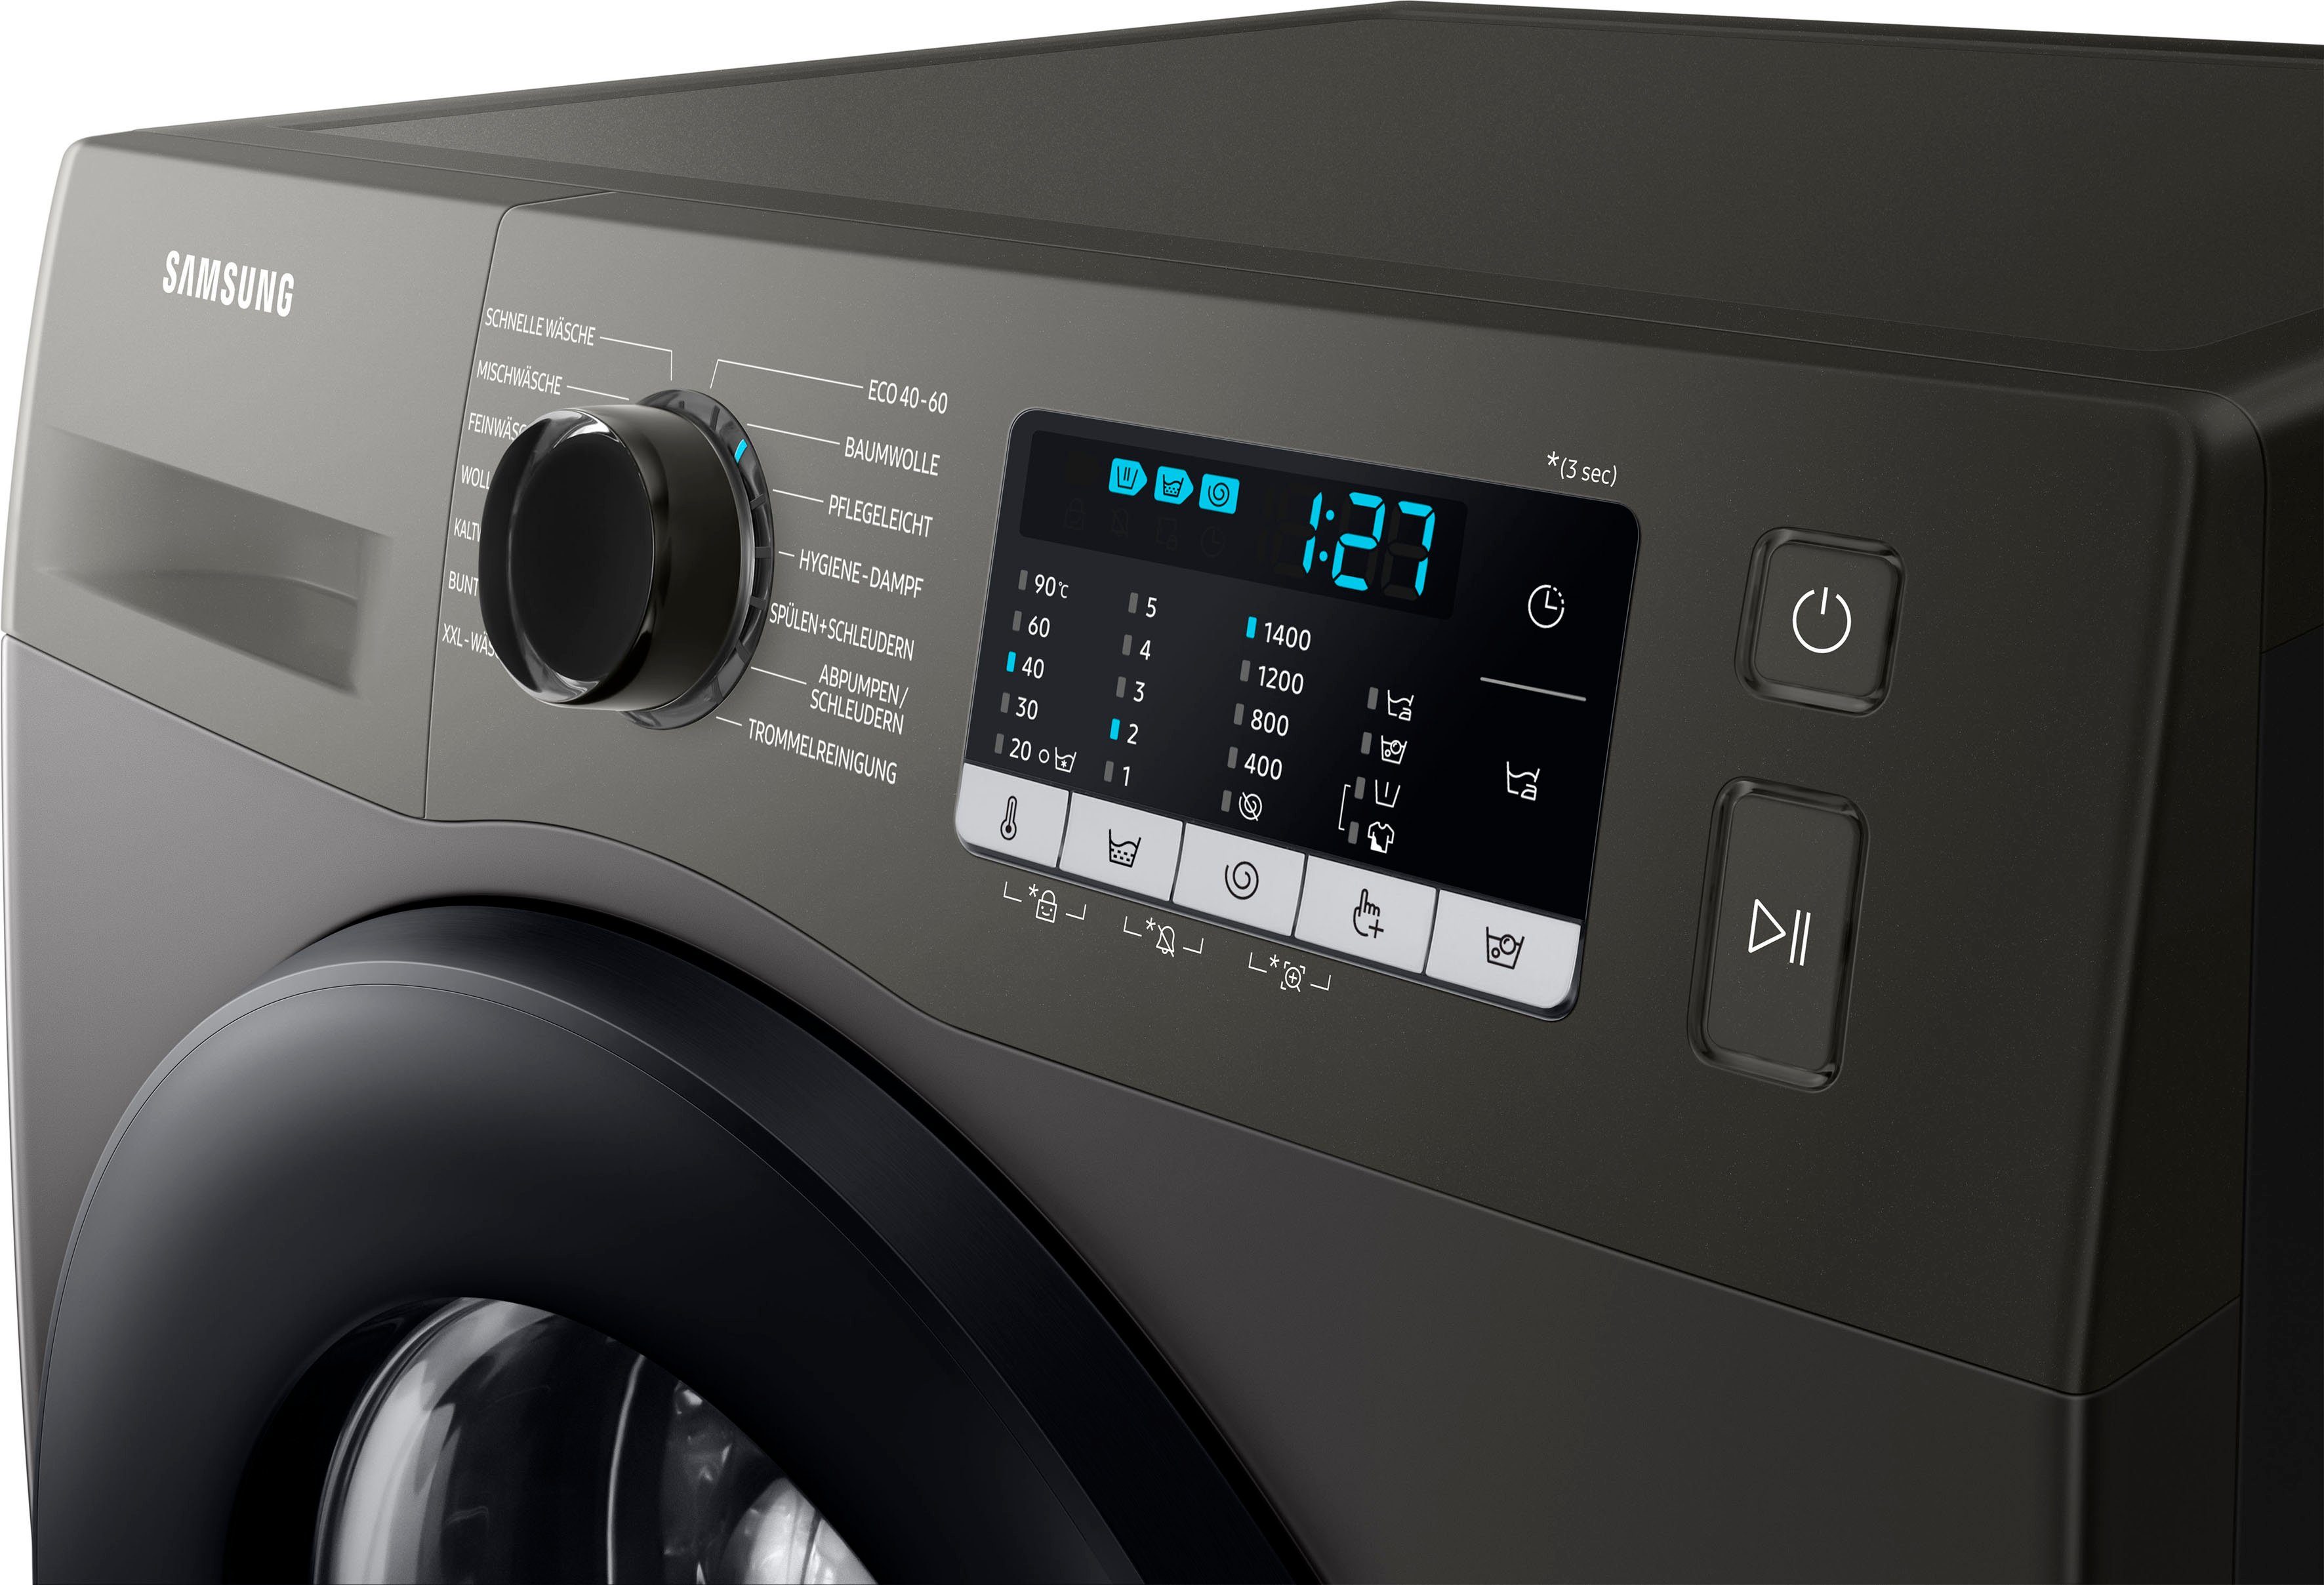 Waschmaschine WW5000T 1400 U/min, 7 kg, FleckenIntensiv-Funktion Samsung INOX WW70TA049AX,